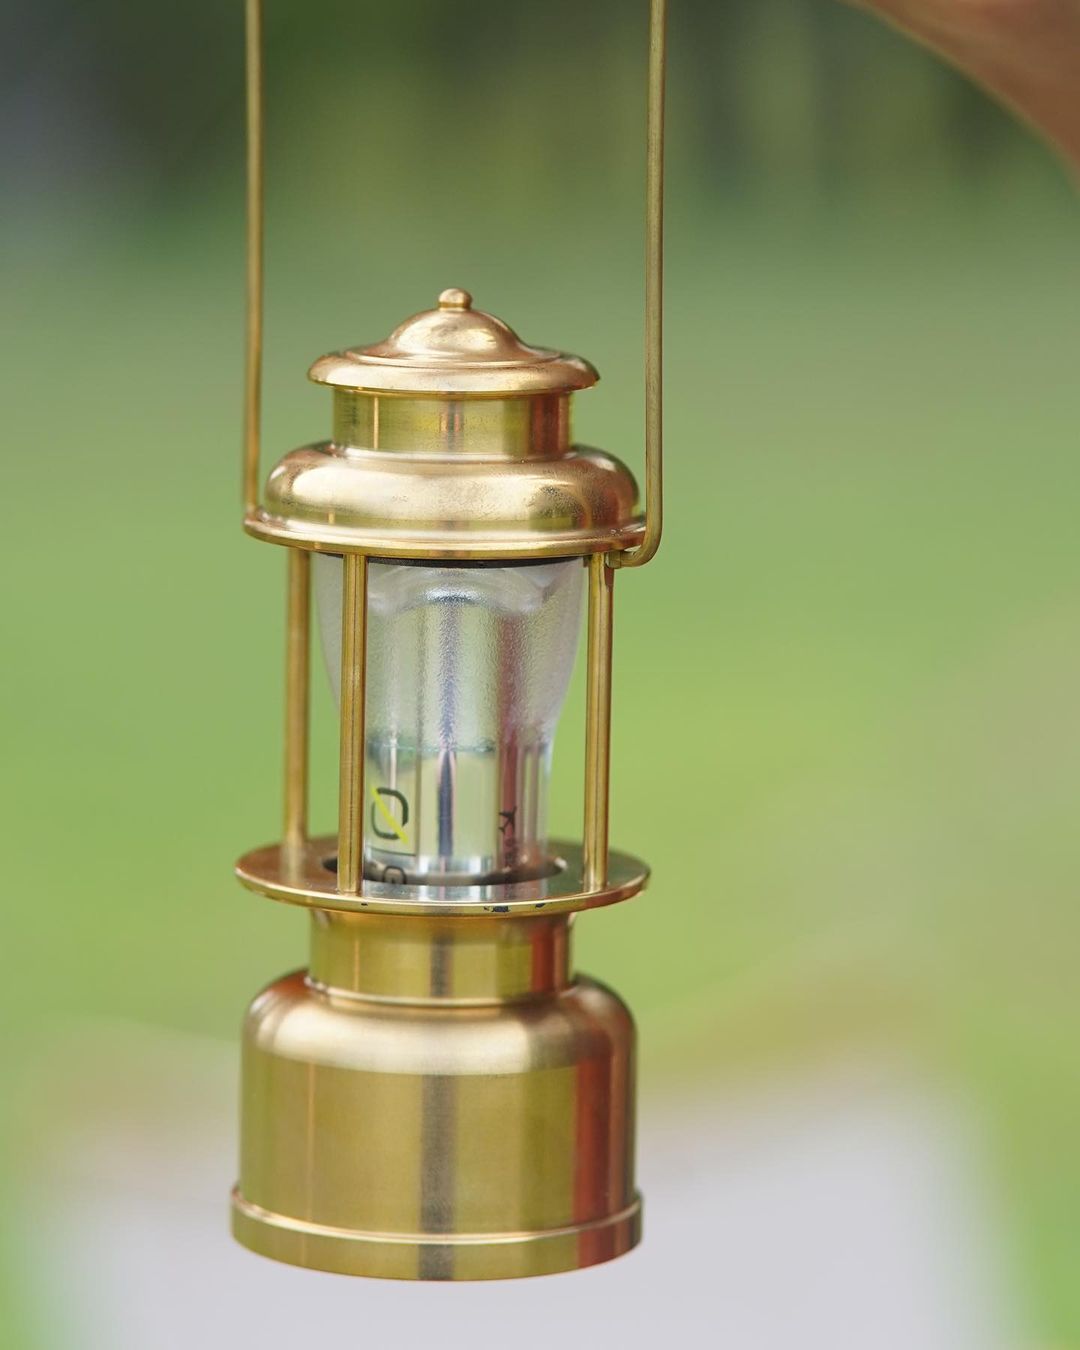 Reproland -Goal Zero lantern case汽化燈罩